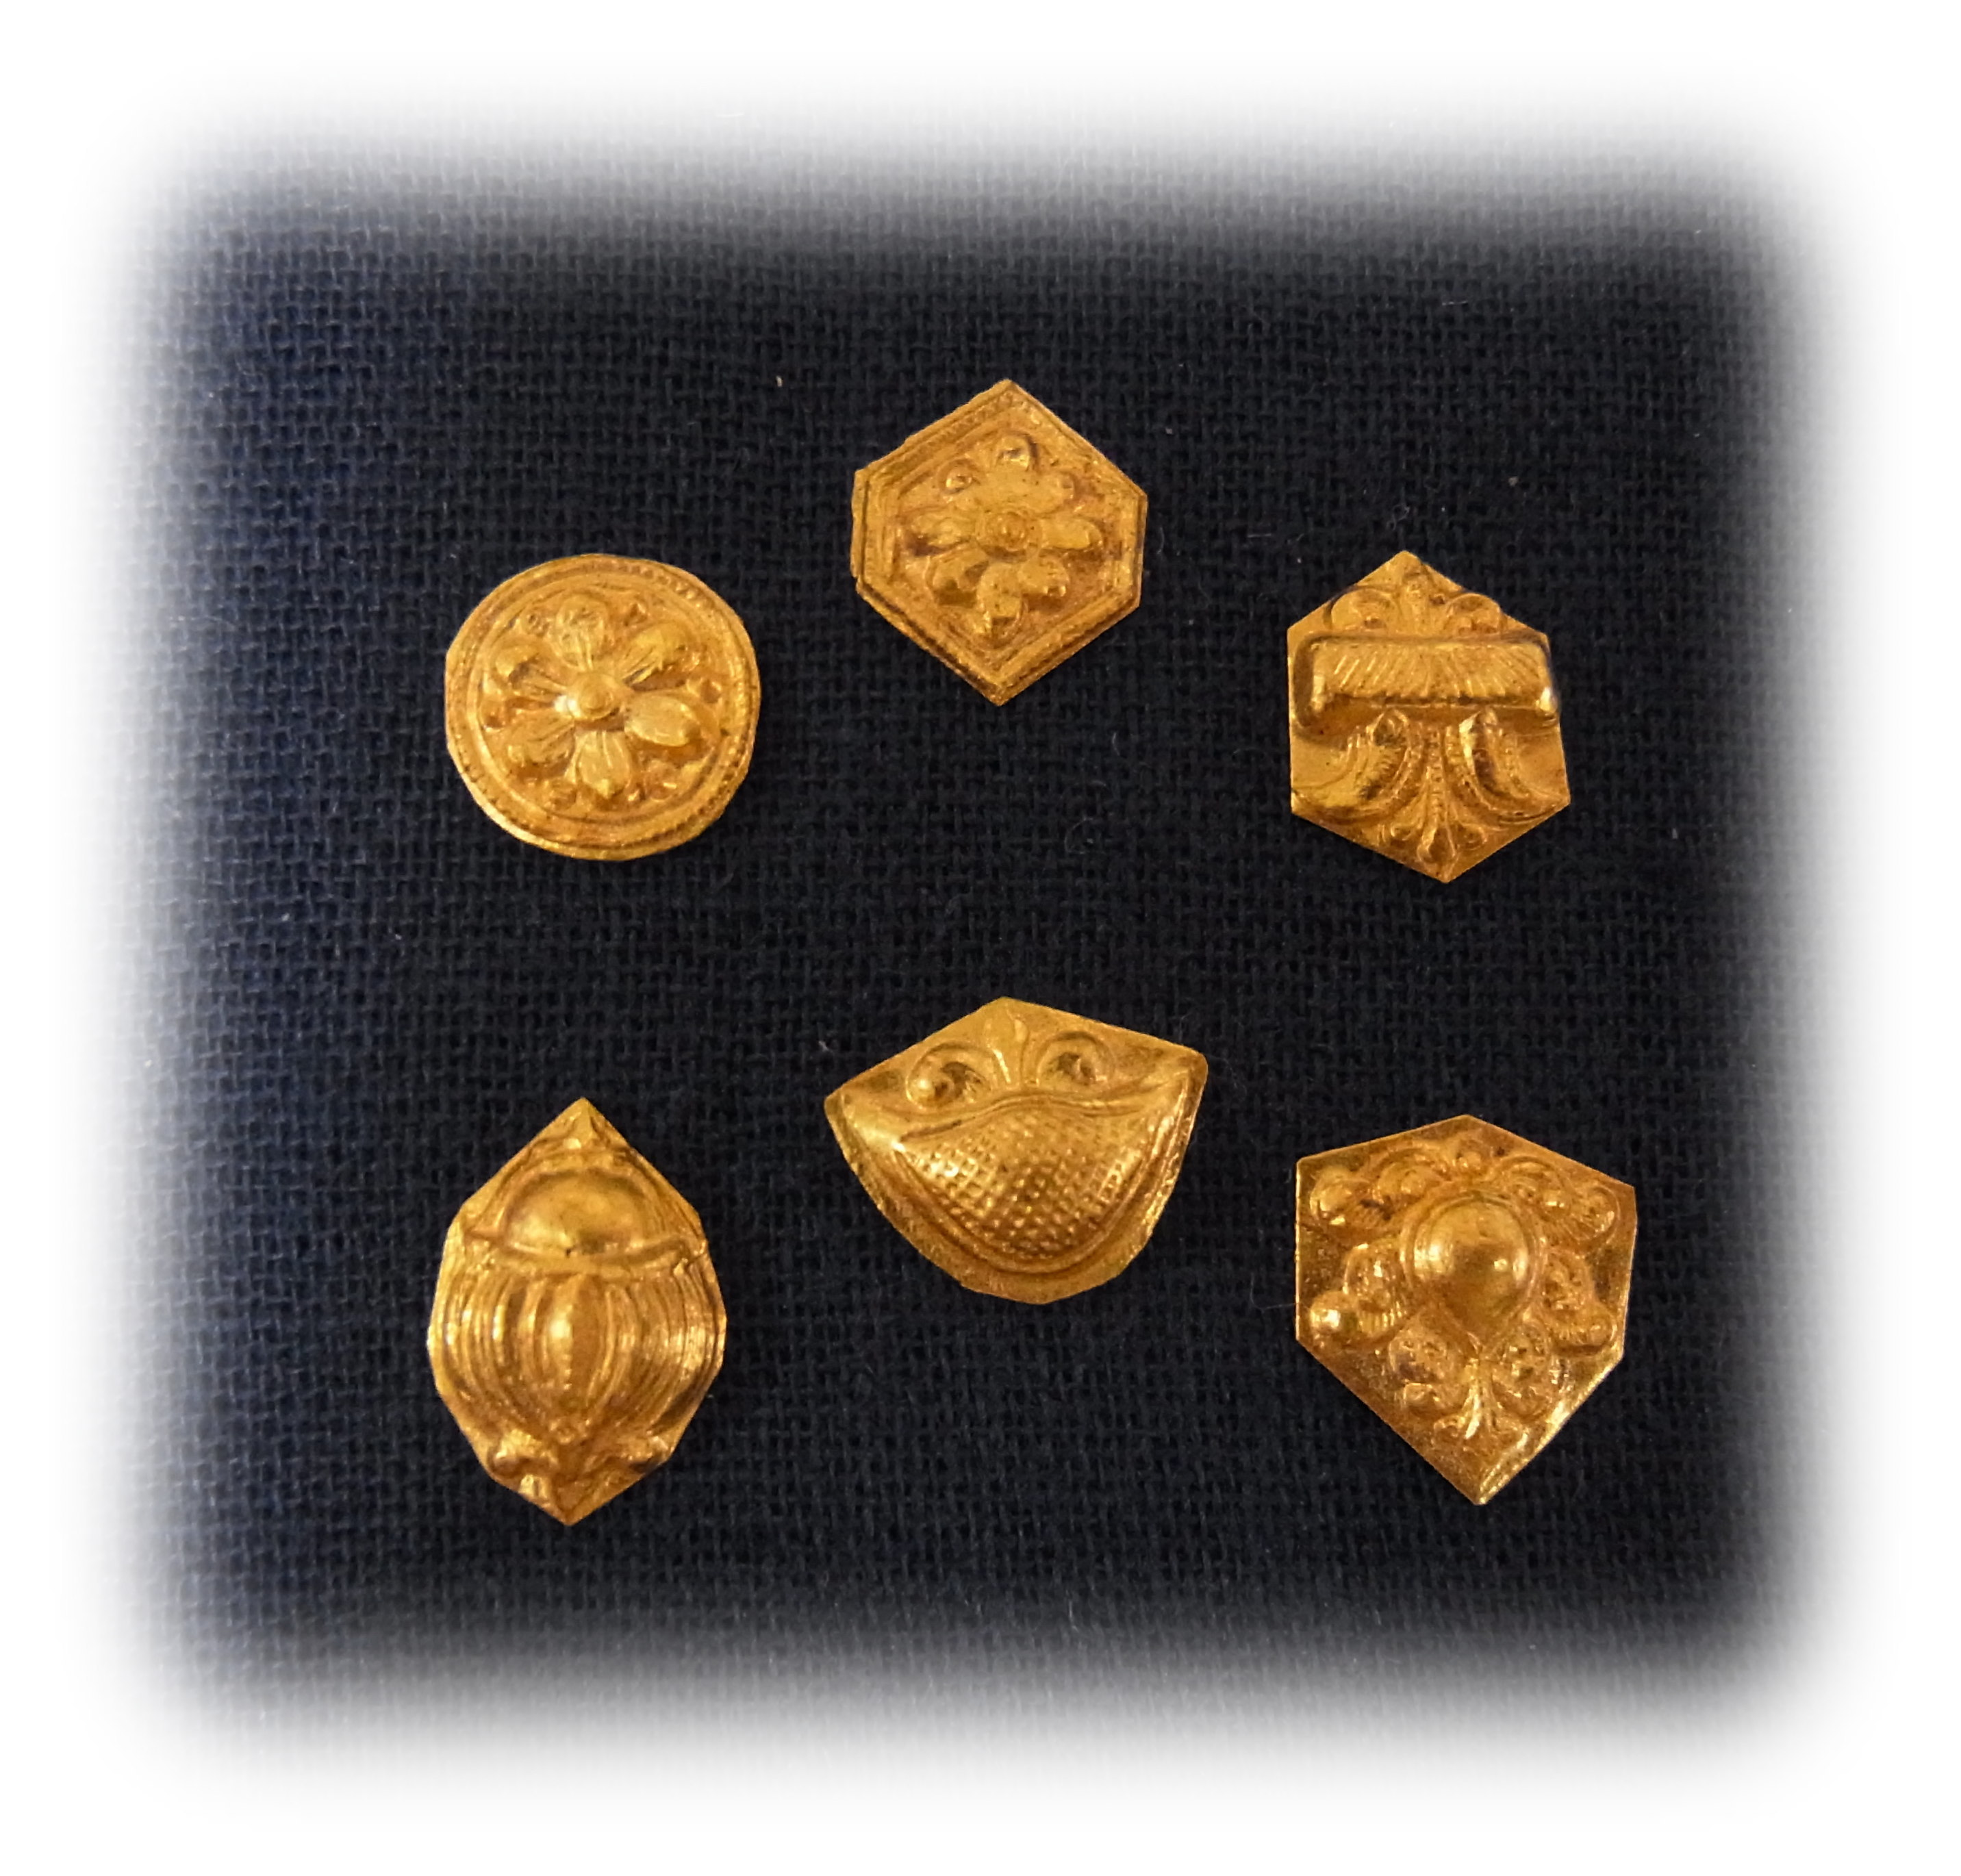 アンティークのジュエリー制作用の金型から打ち出した純金パーツの形状